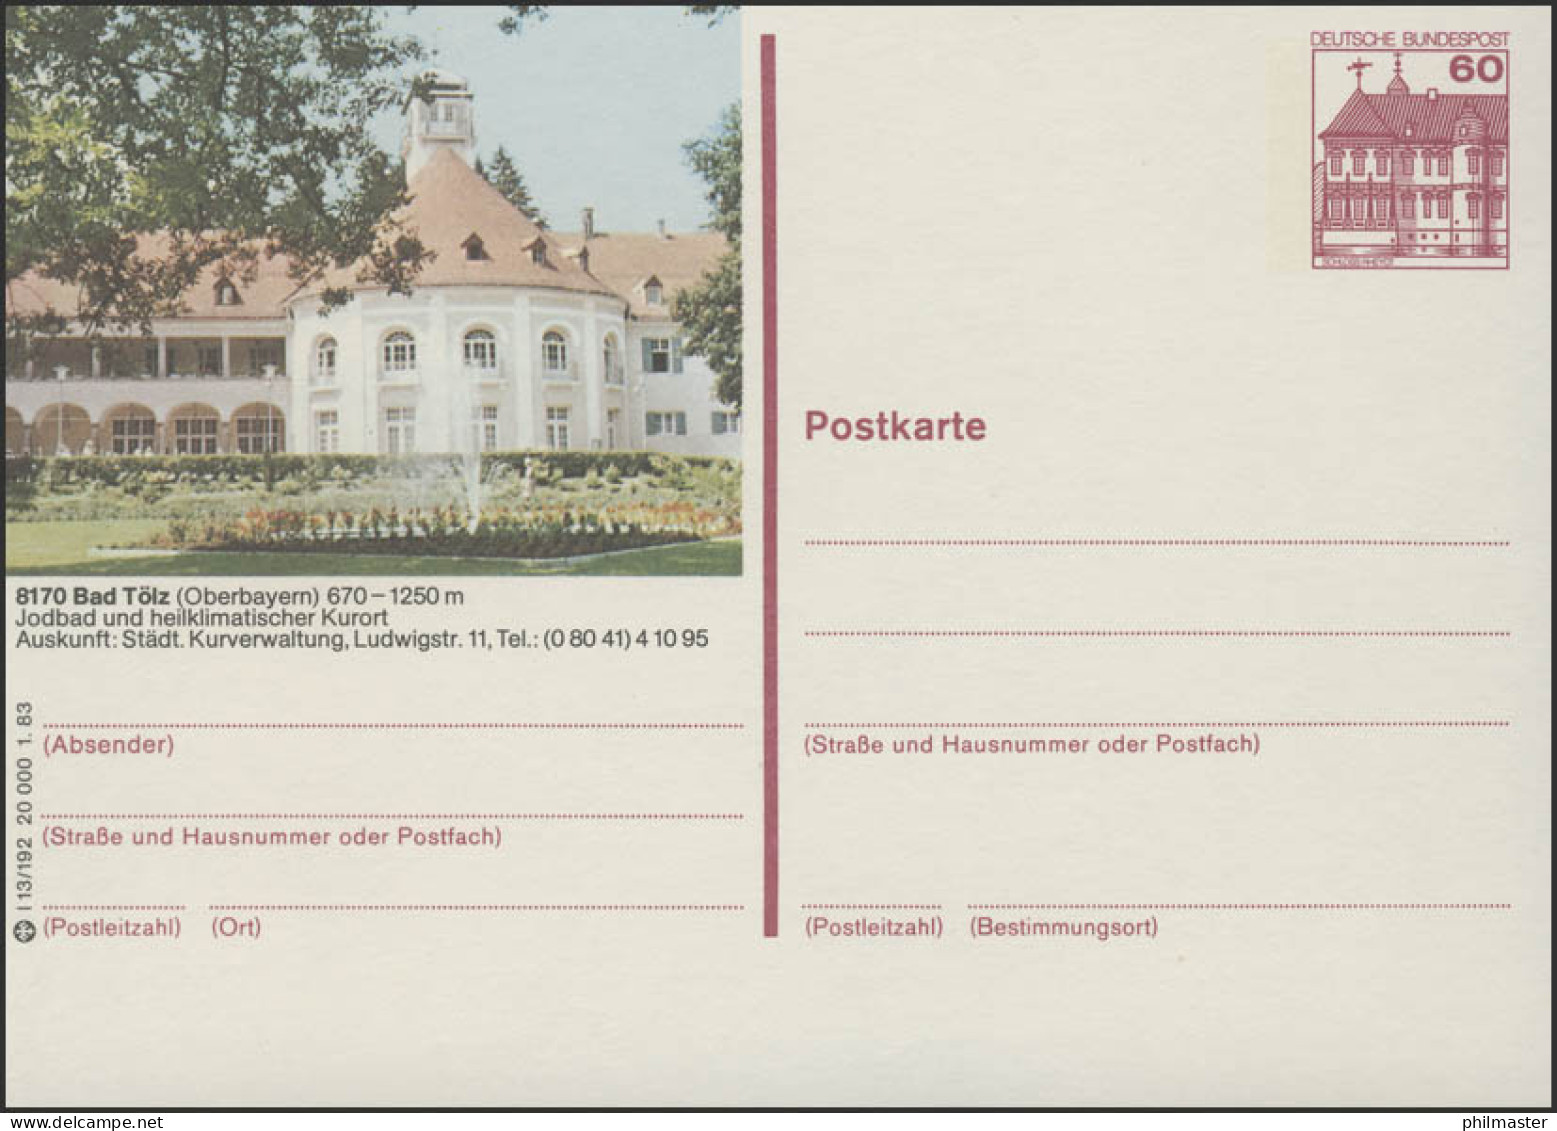 P138-l13/192 8170 Bad Tölz, Kurmittelhaus ** - Bildpostkarten - Ungebraucht